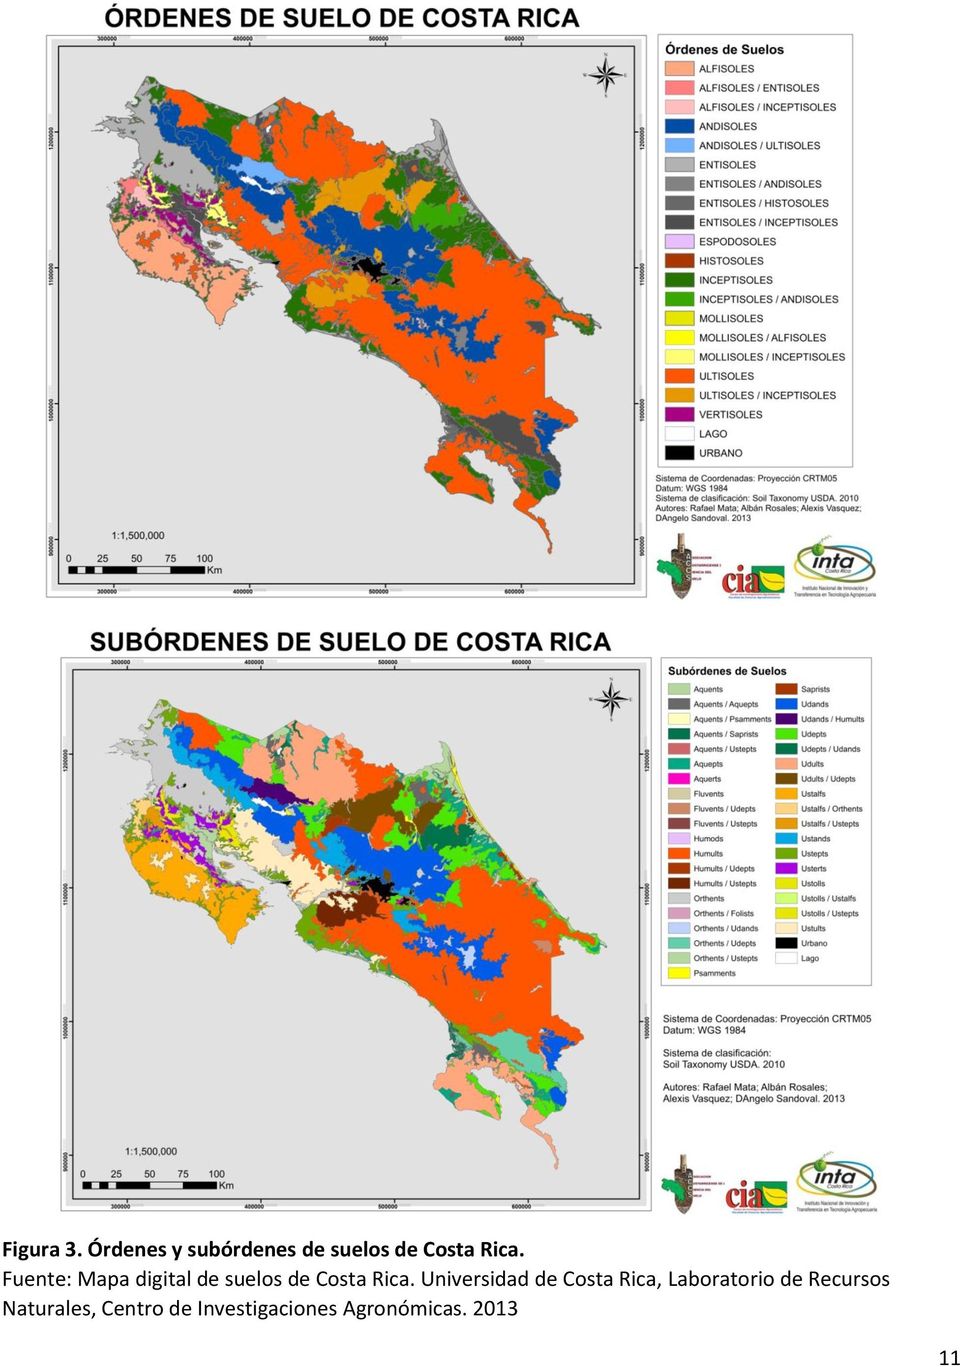 Fuente: Mapa digital de suelos de Costa Rica.